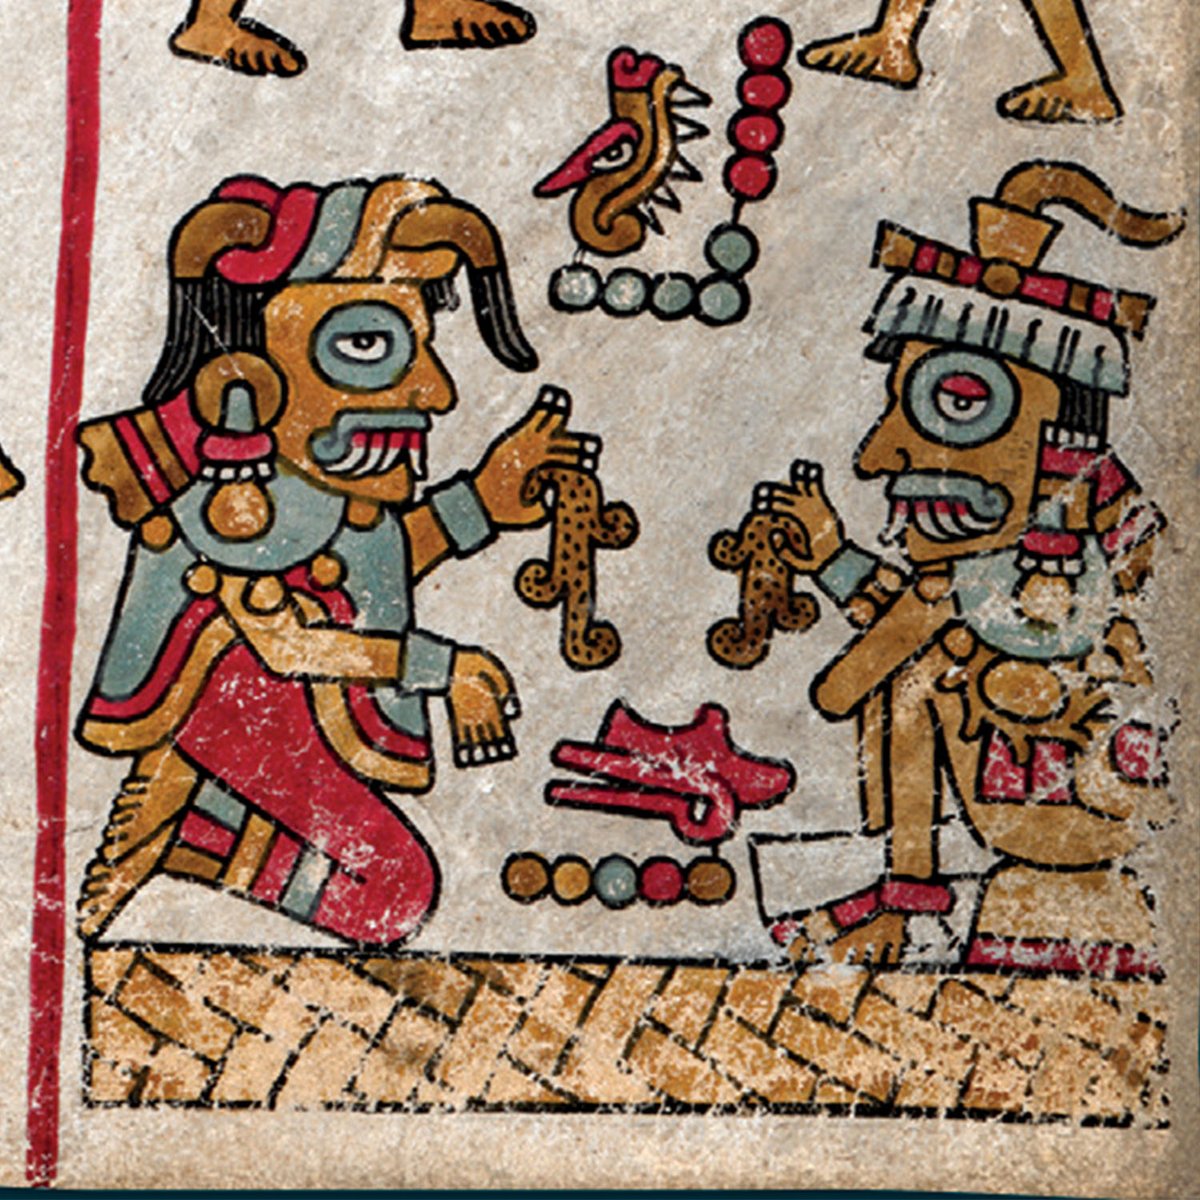 La pareja 9 Lagarto y 5 Viento representa tanto a los ancestros fundadores del linaje de Apoala (en La Mixteca, Oaxaca) como a las entidades sagradas o antepasados divinos que proveen de lluvia y agua en general a toda la región.